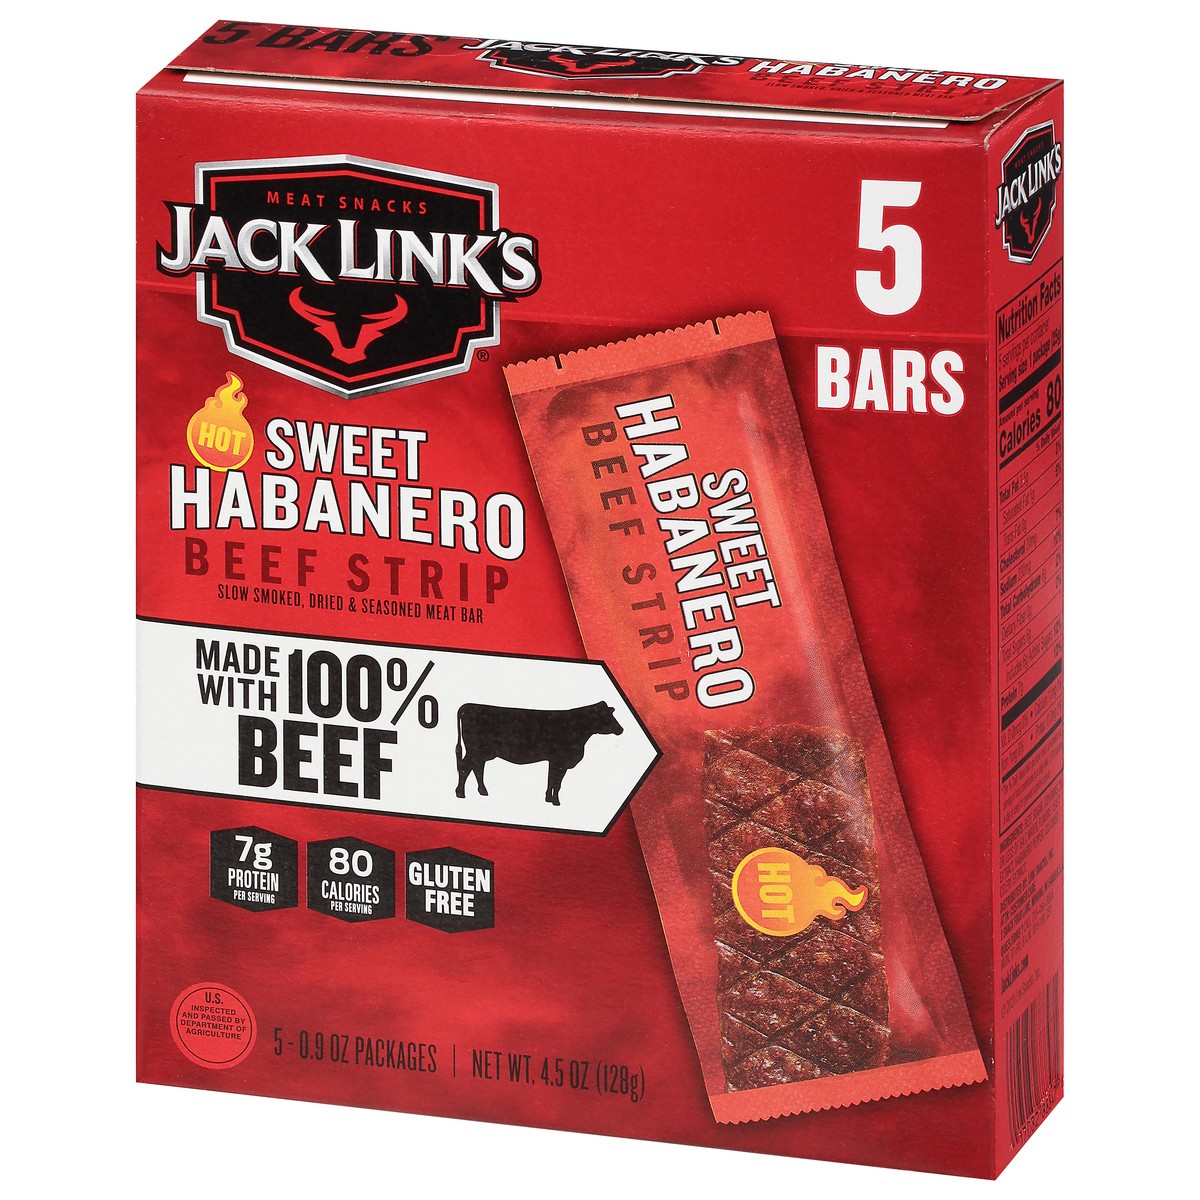 slide 3 of 9, Jack Link's 4.5Oz Jack Link's Sweet Habanero Beef Steak Strip 1/1 Consumer Unit, 4.5 oz